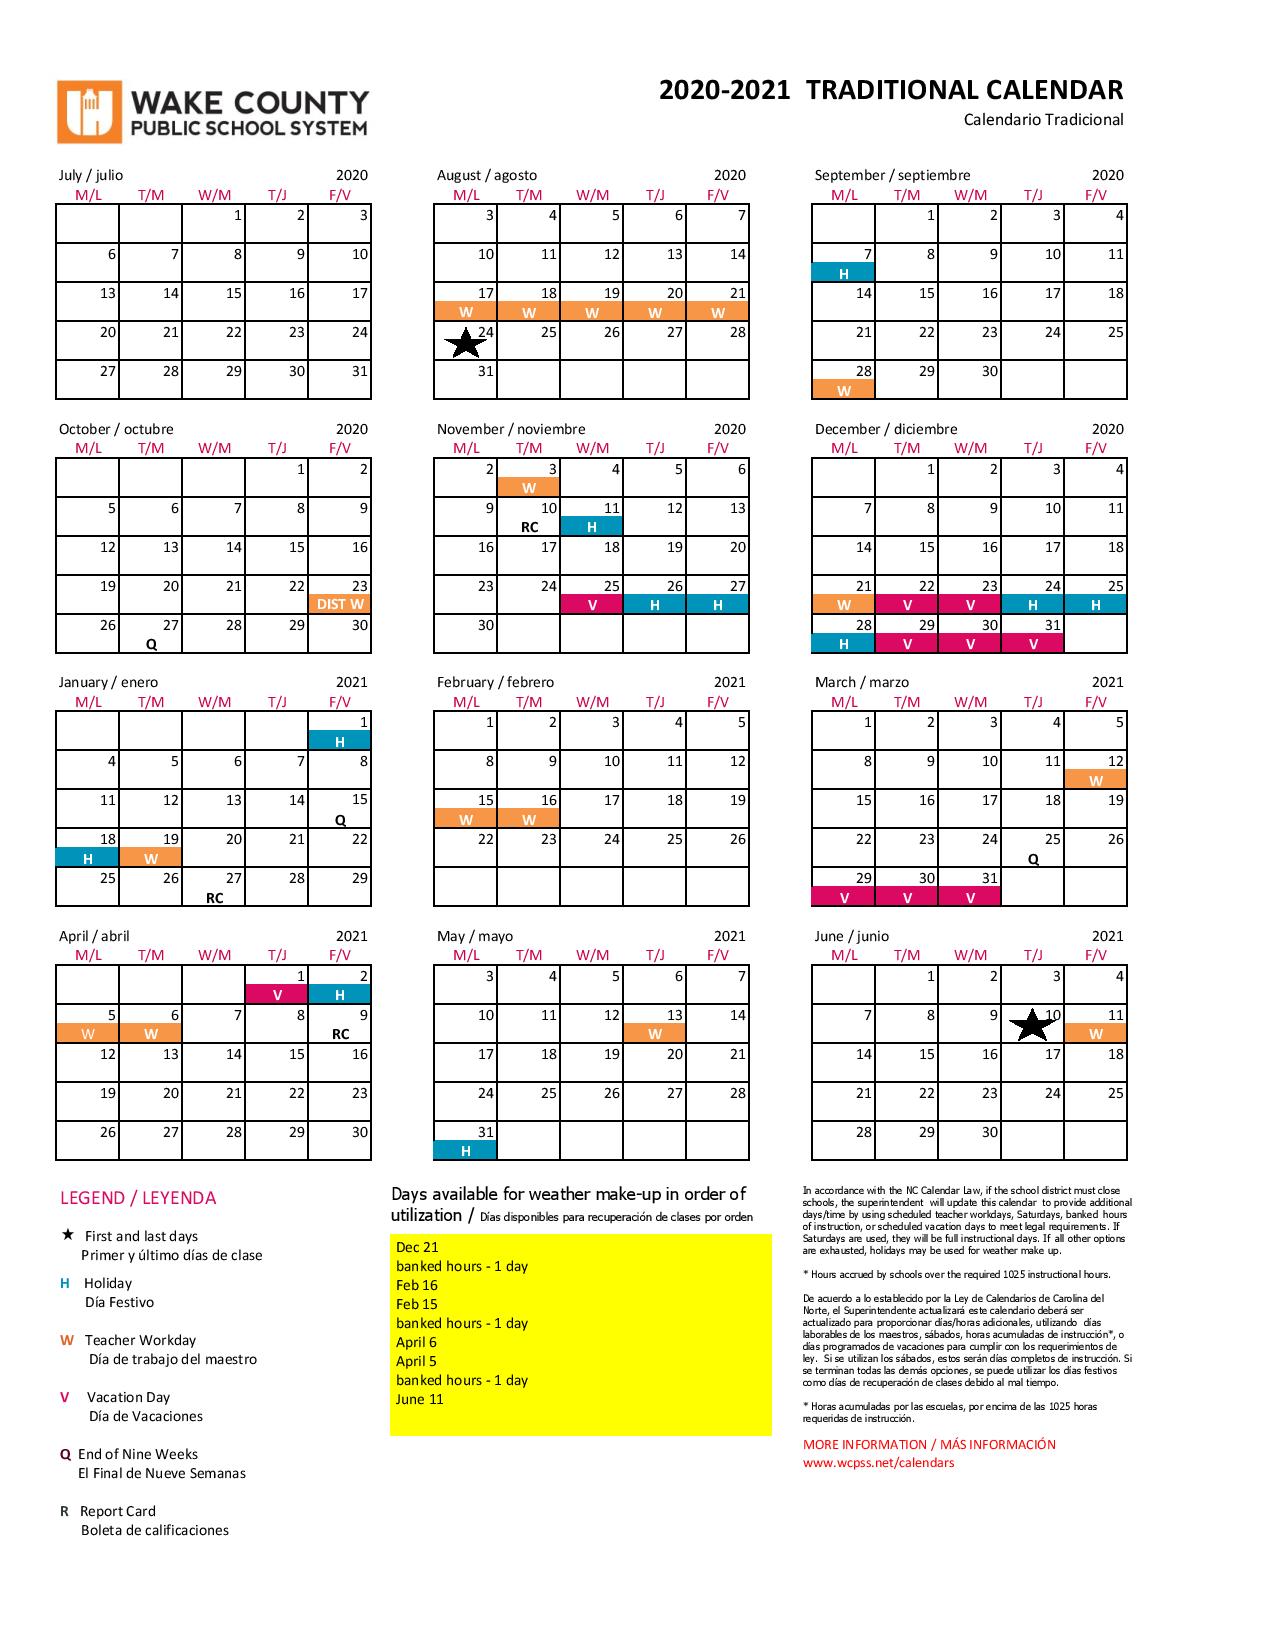 wcpss-2022-23-calendar